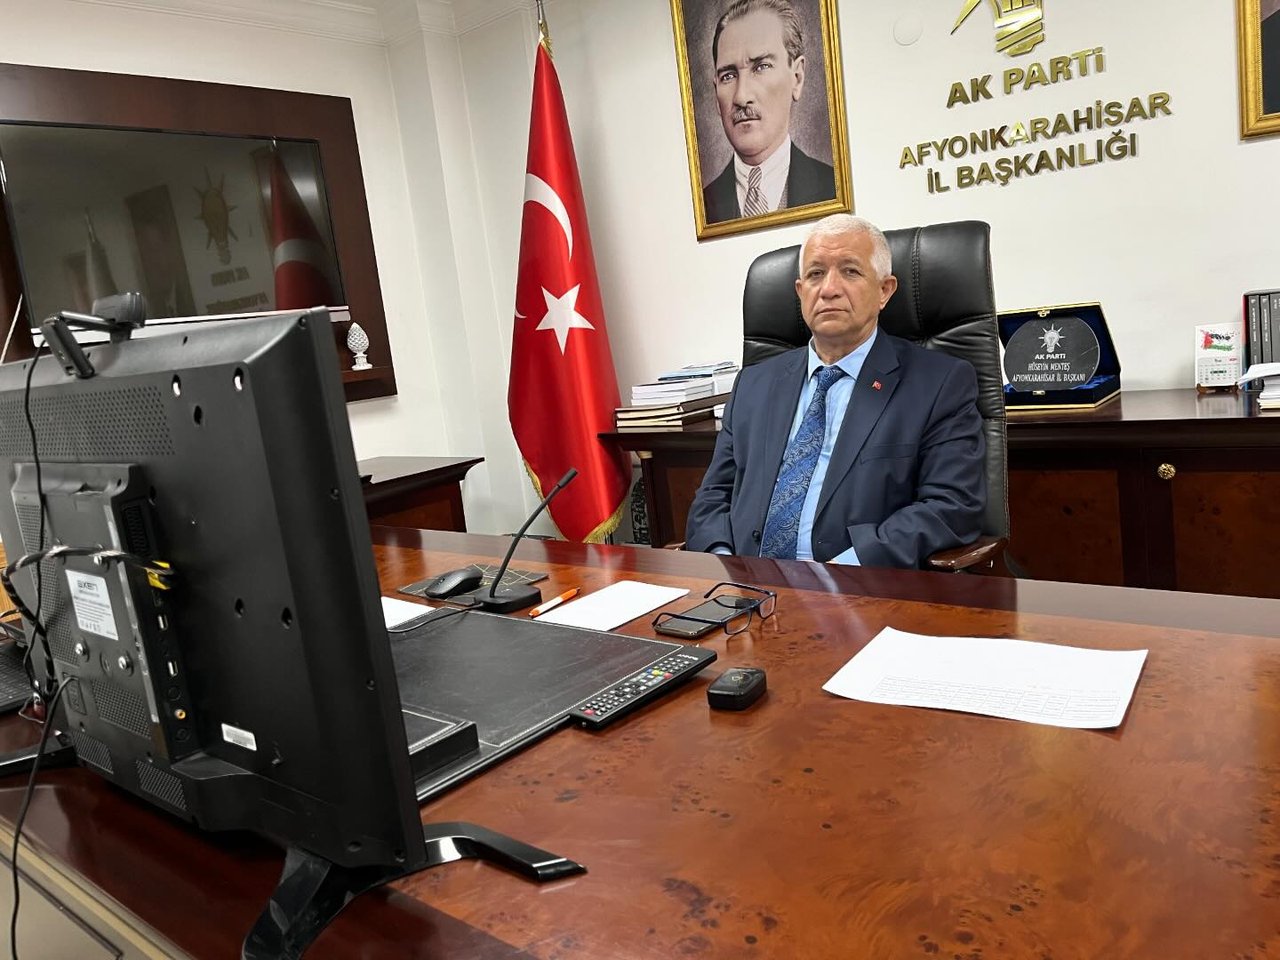 Afyonkarahisar AK Parti İl Başkanı Hüseyin Menteş, Parti Genel Merkezi'nde düzenlenen toplantıya video konferans ile katıldı.